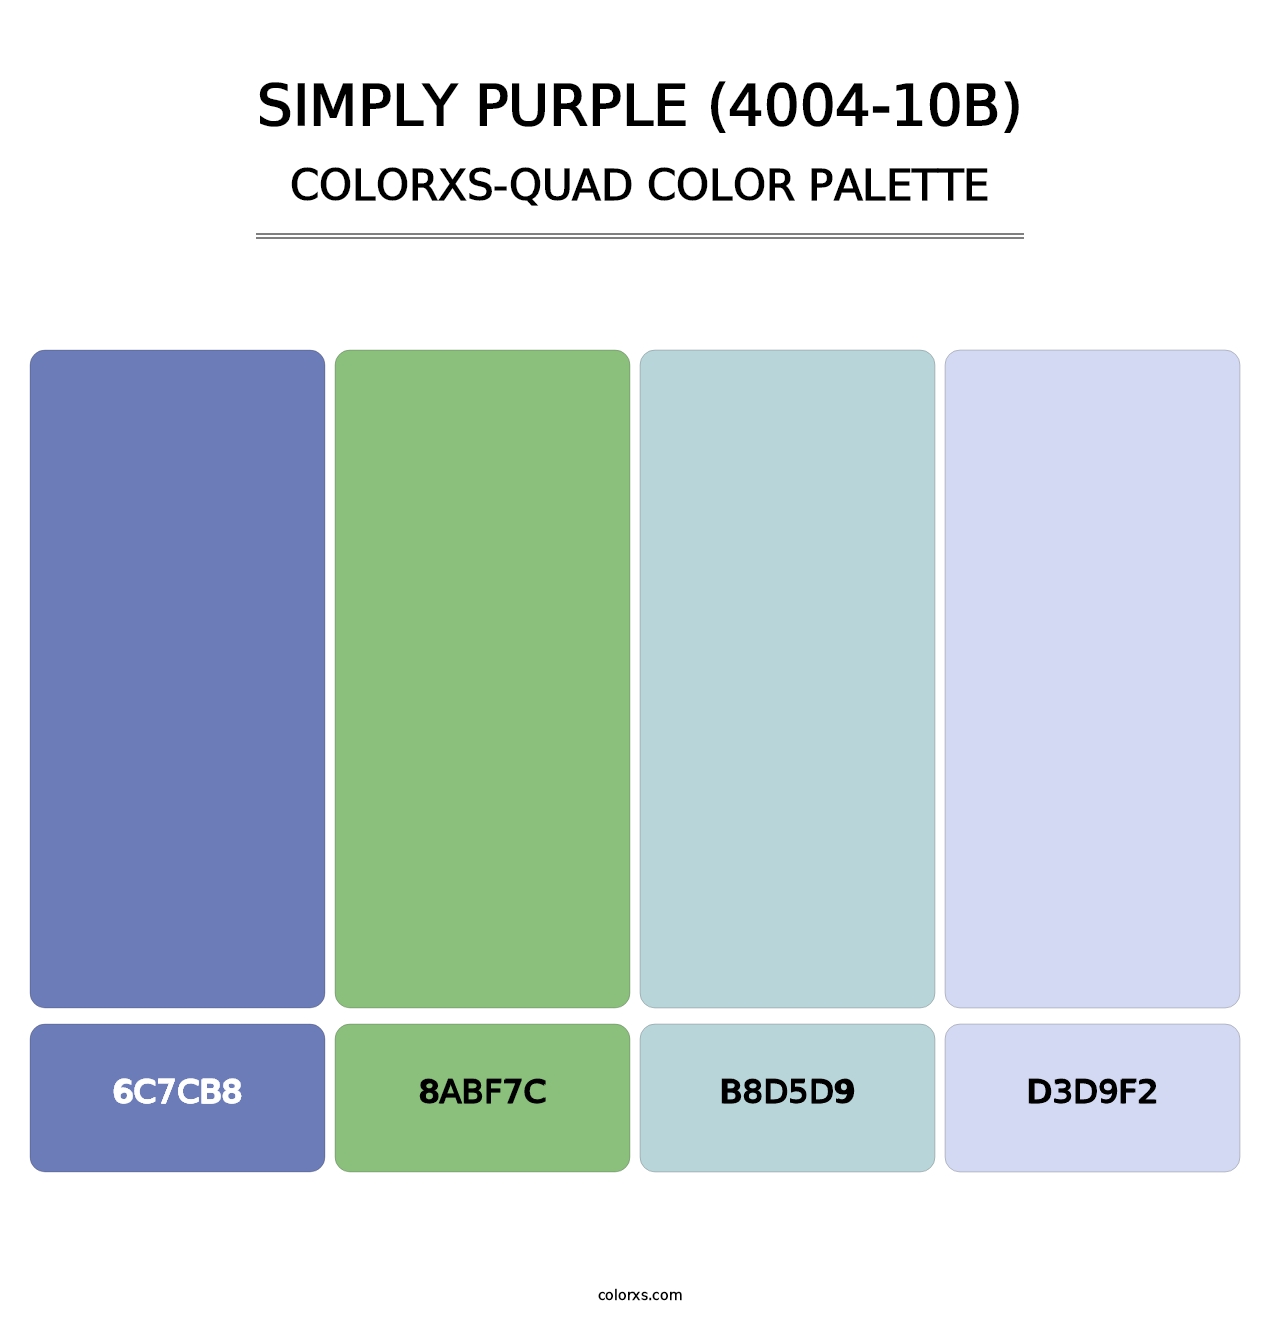 Simply Purple (4004-10B) - Colorxs Quad Palette